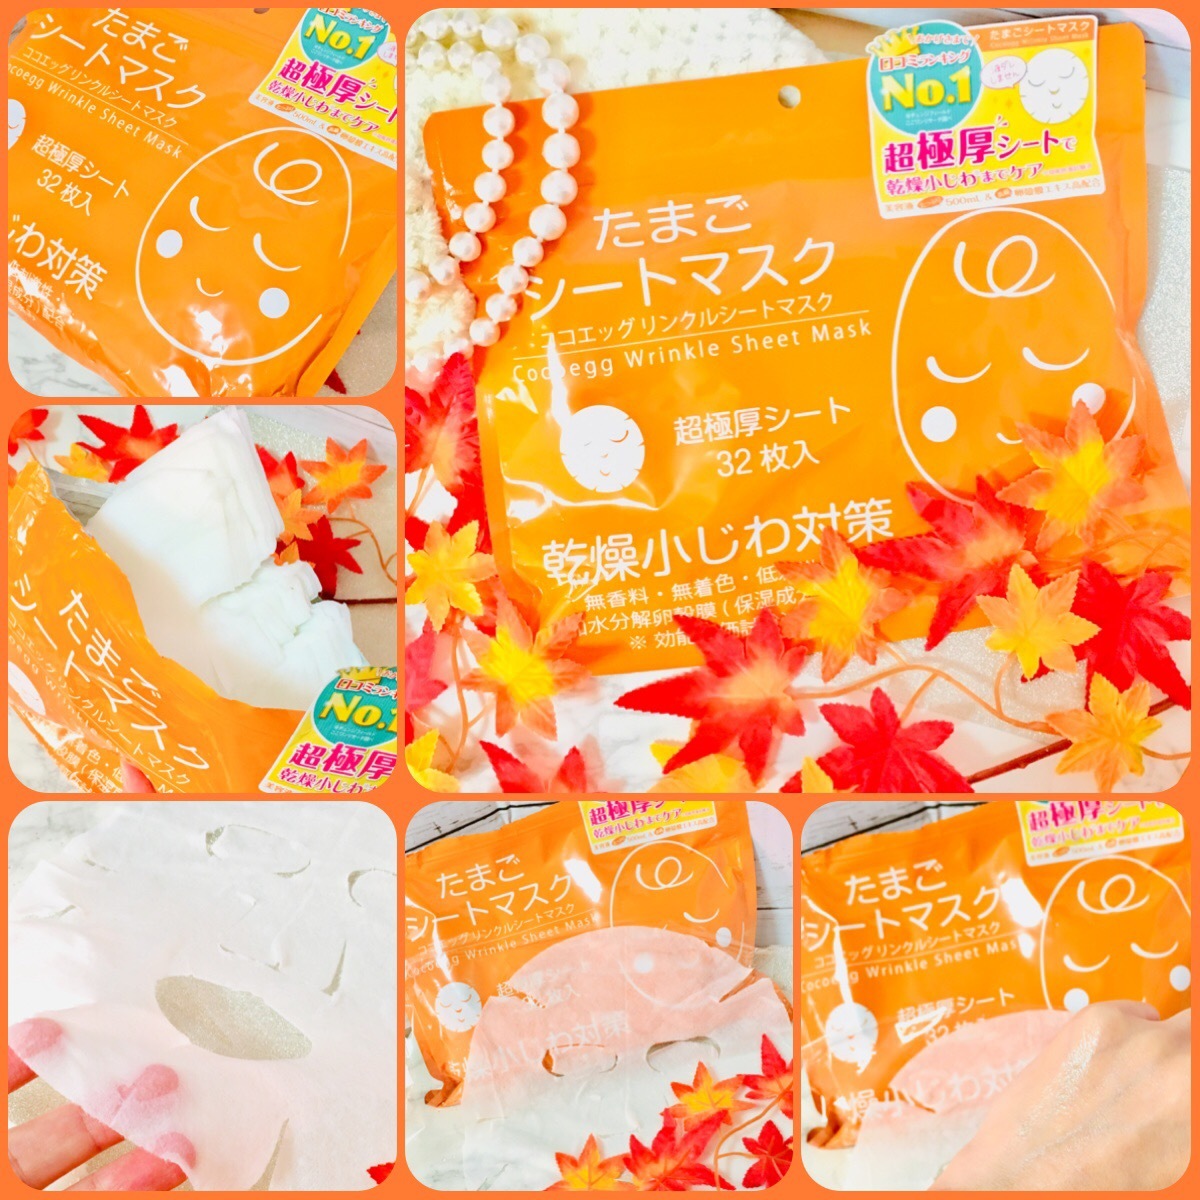 Mặt Nạ Trứng Gà Trắng Da Cocoegg Wrinkle Sheet Mask Nhật Bản (Bịch 32 Miếng)